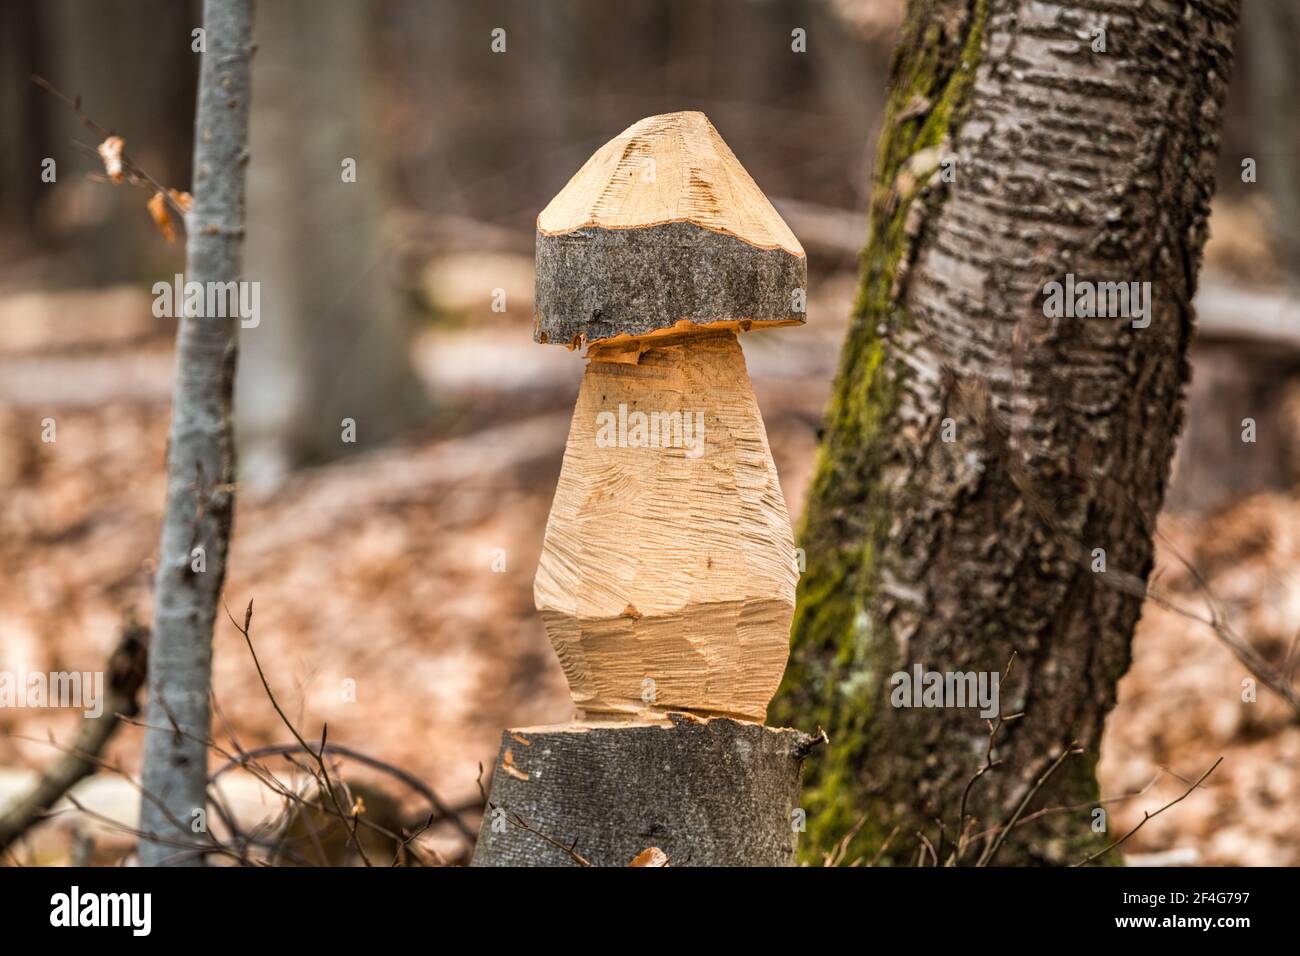 Holzschnitzerei im Wald in Form eines Pilz Stockfoto